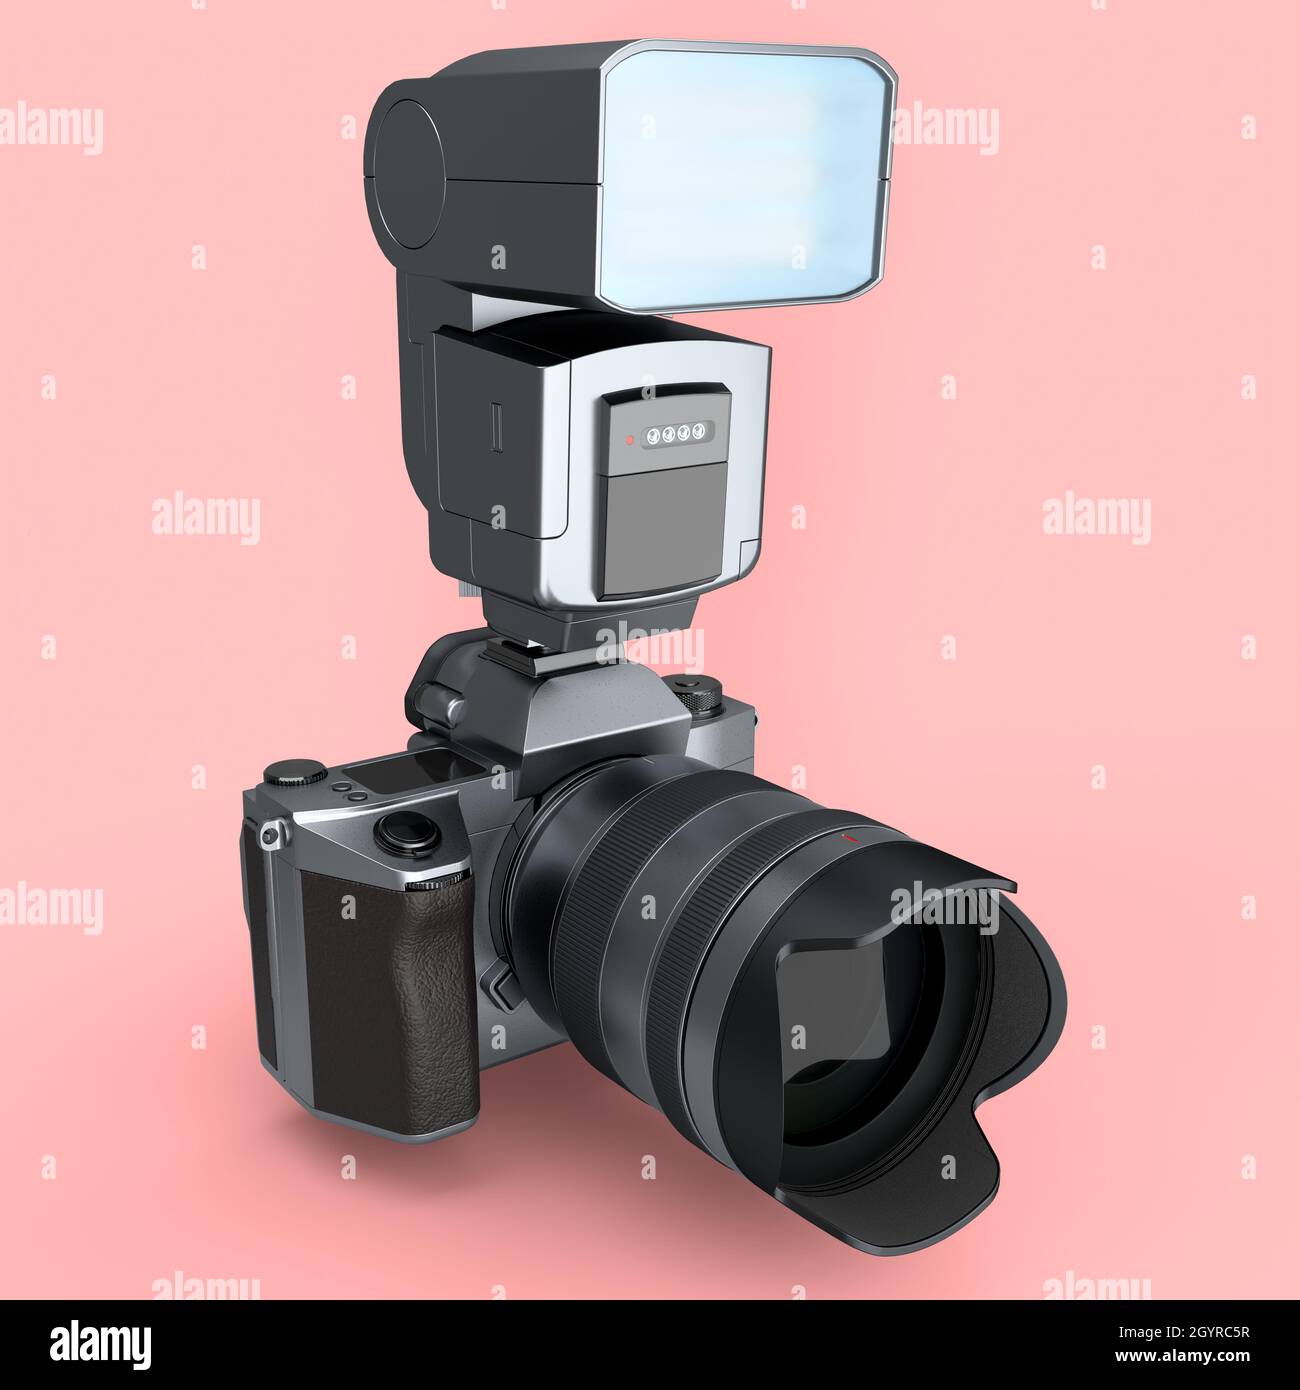 Concetto di inesistente fotocamera DSLR argento con obiettivo e flash esterno speedlight isolato su sfondo rosa. Rendering 3D di fotografie professionali Foto Stock